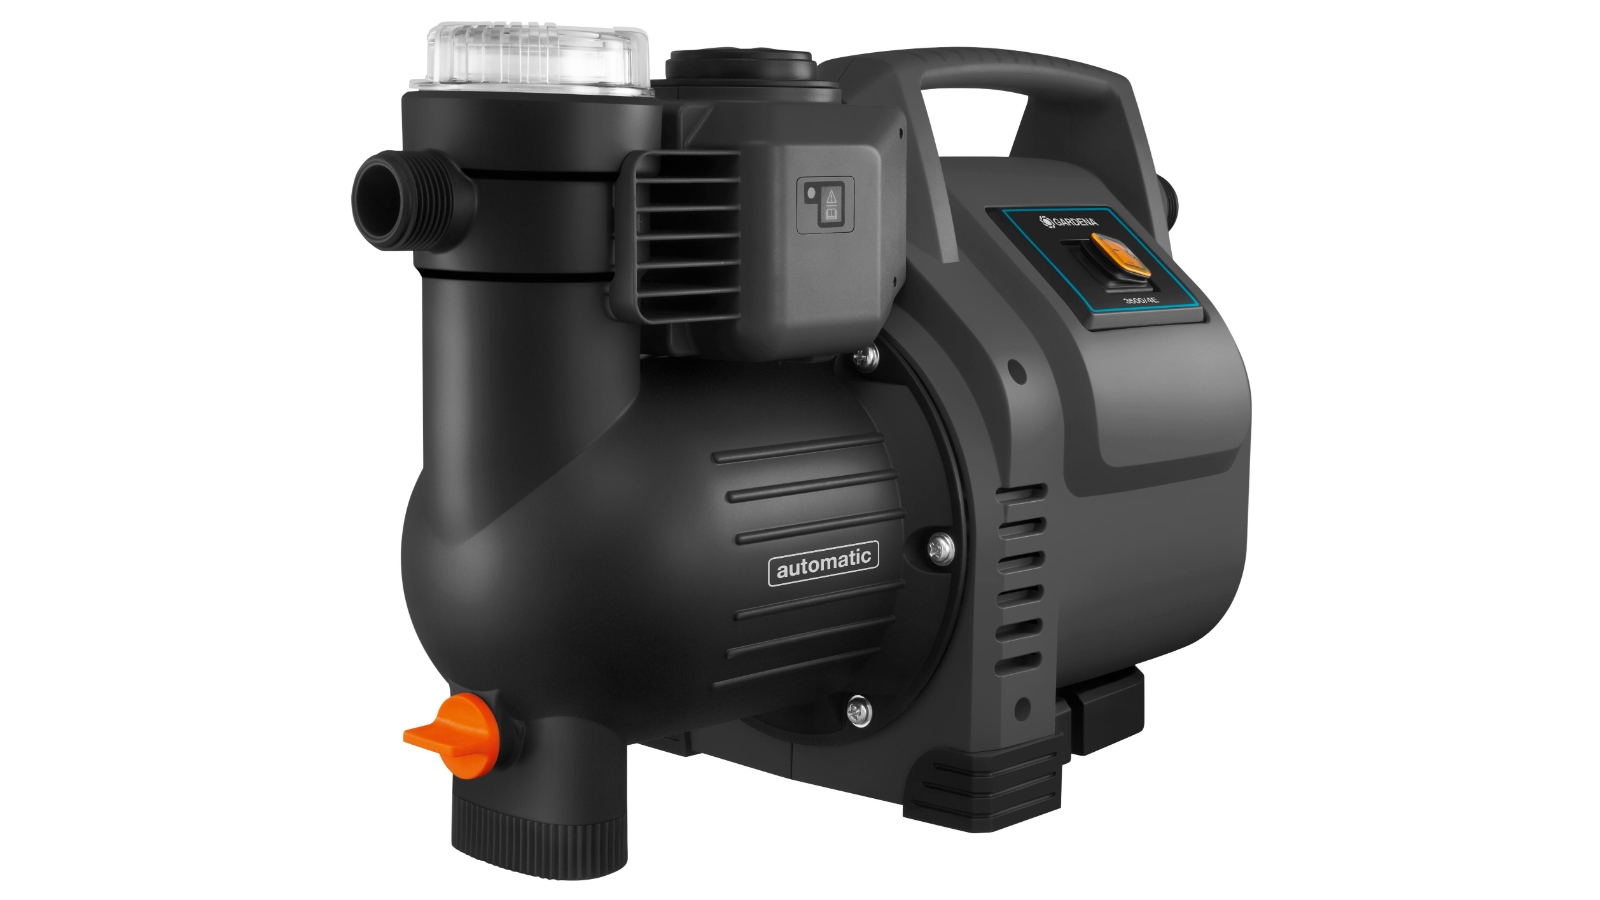 Gardena Classic automatic hydrophore pump 3500/4e